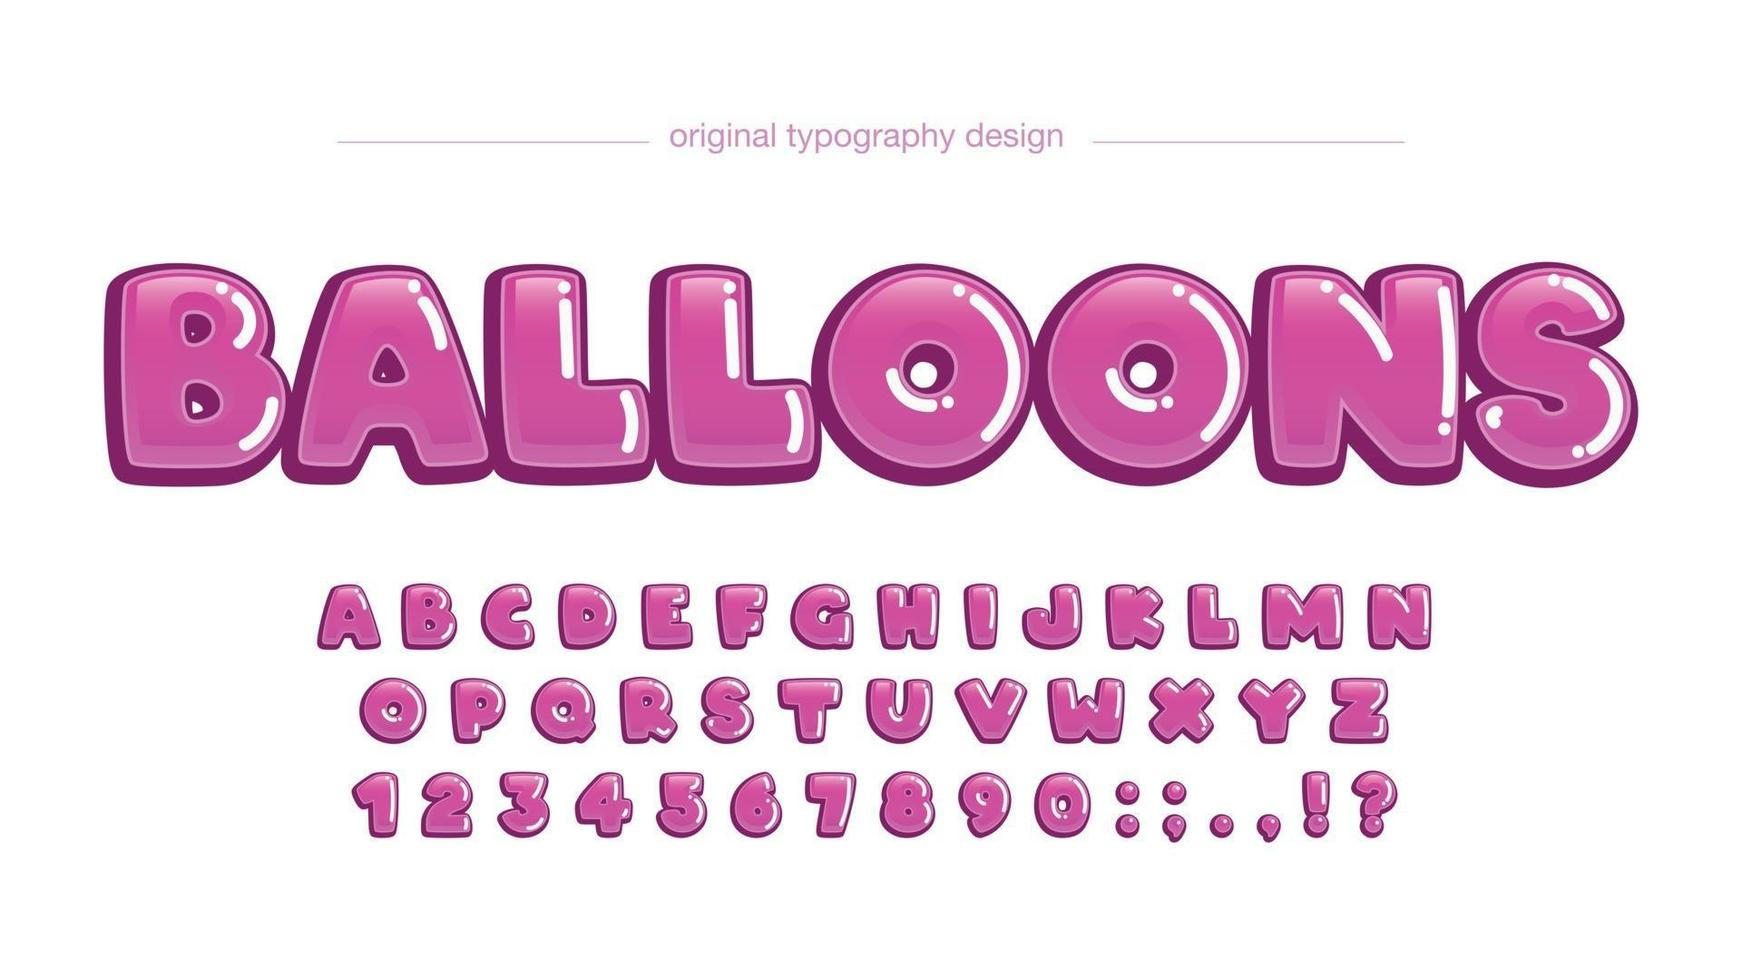 benutzerdefinierte Typografie der rosa gerundeten Blase-Karikatur vektor